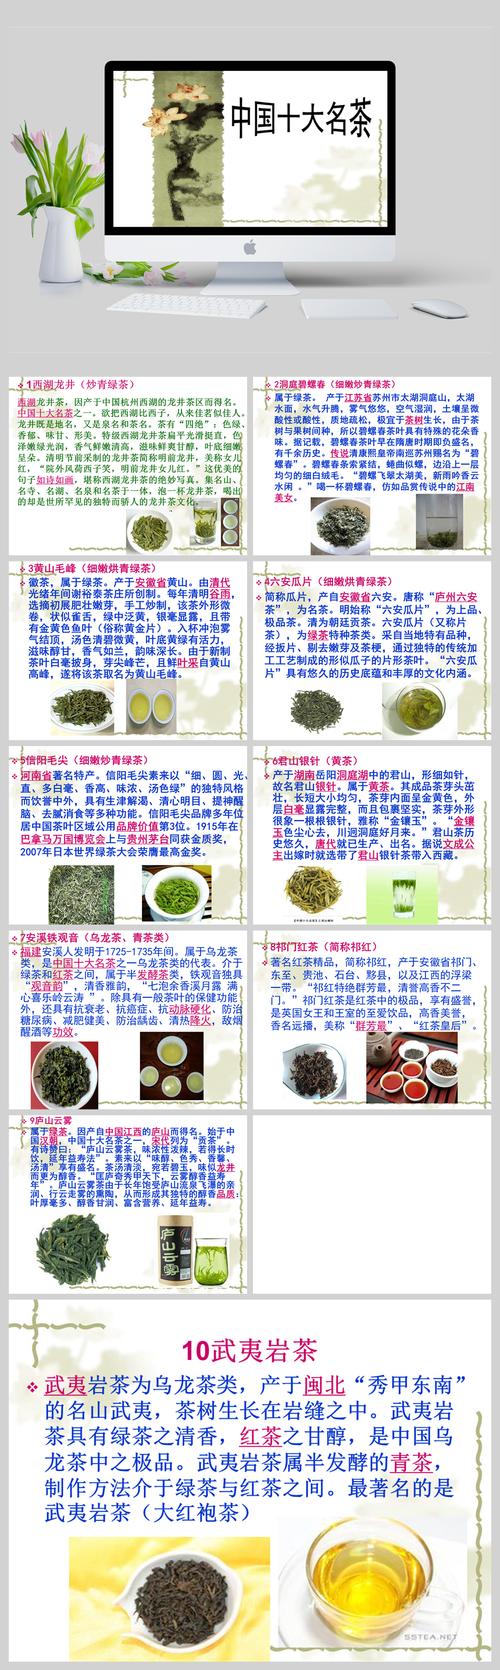 中国五大名茶排行榜介绍